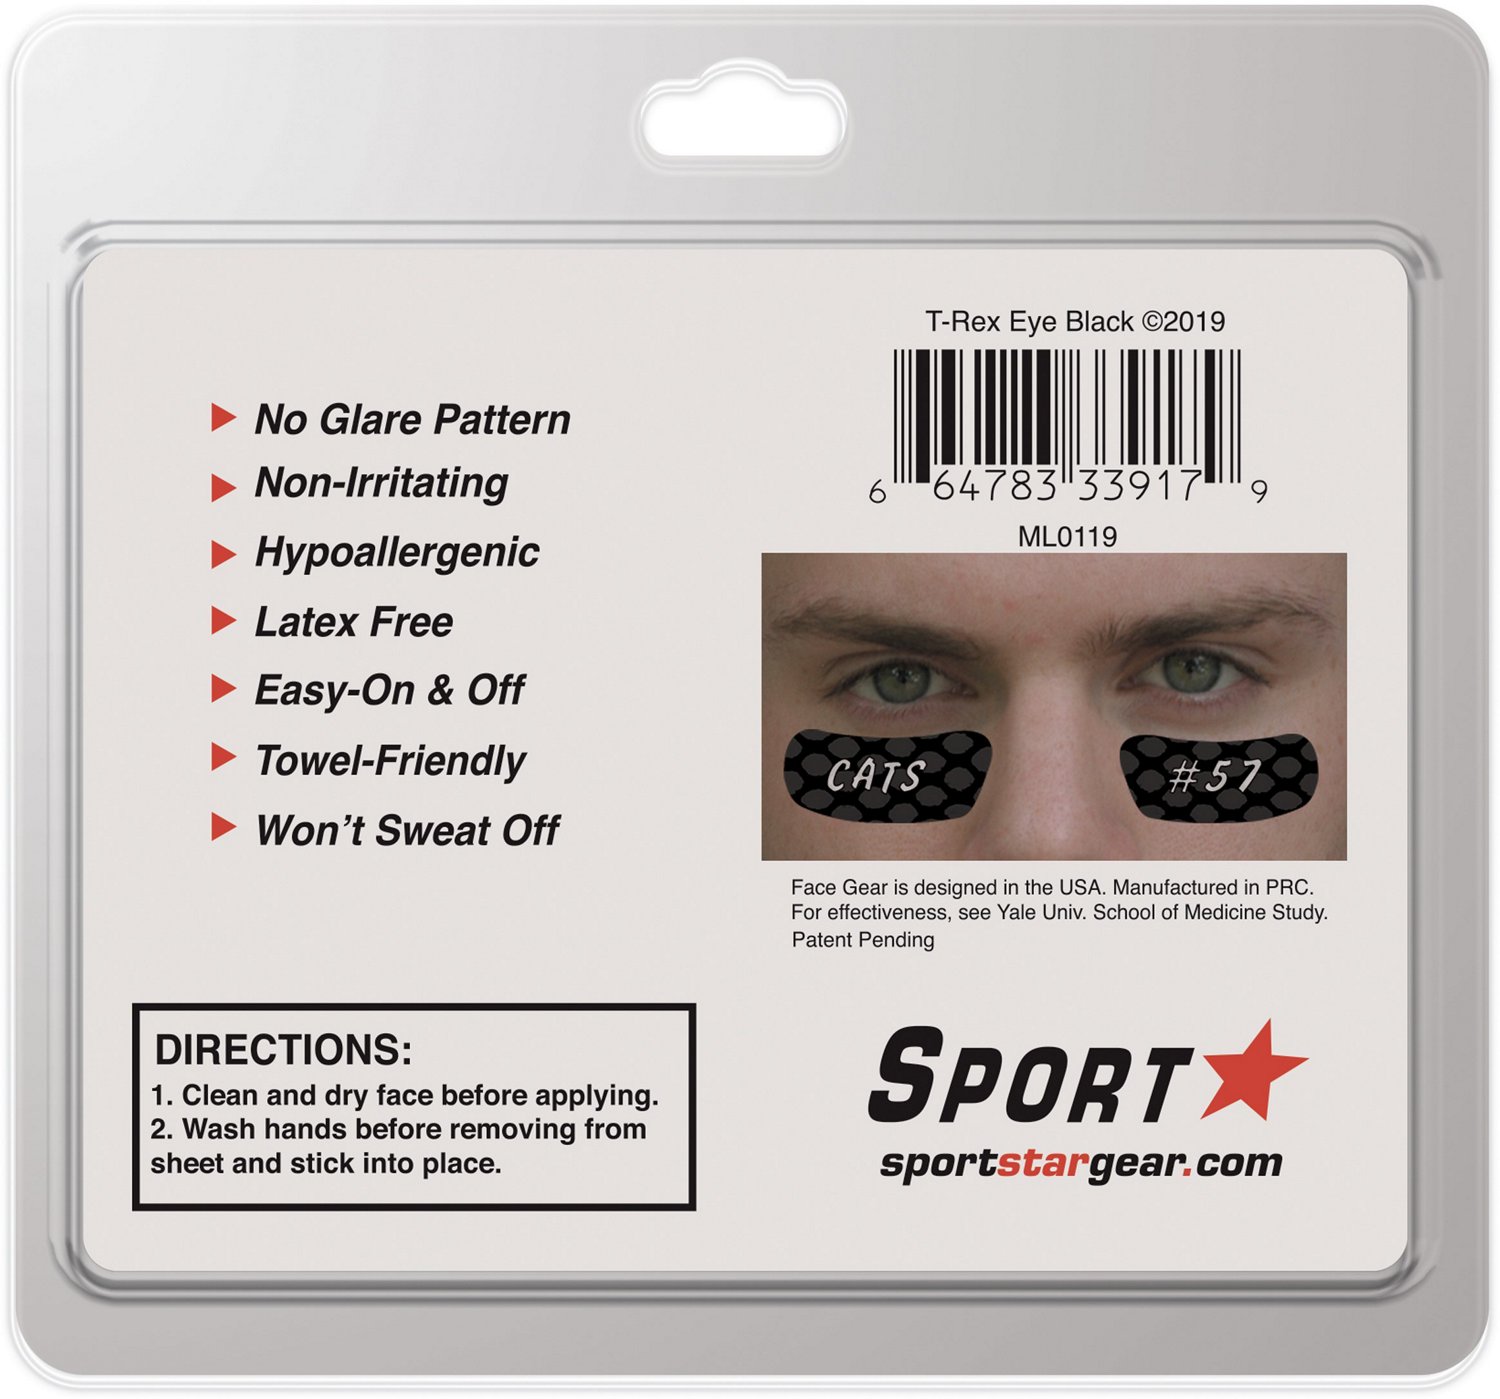 Sportstar Eye Black Stickers w/ Pencil